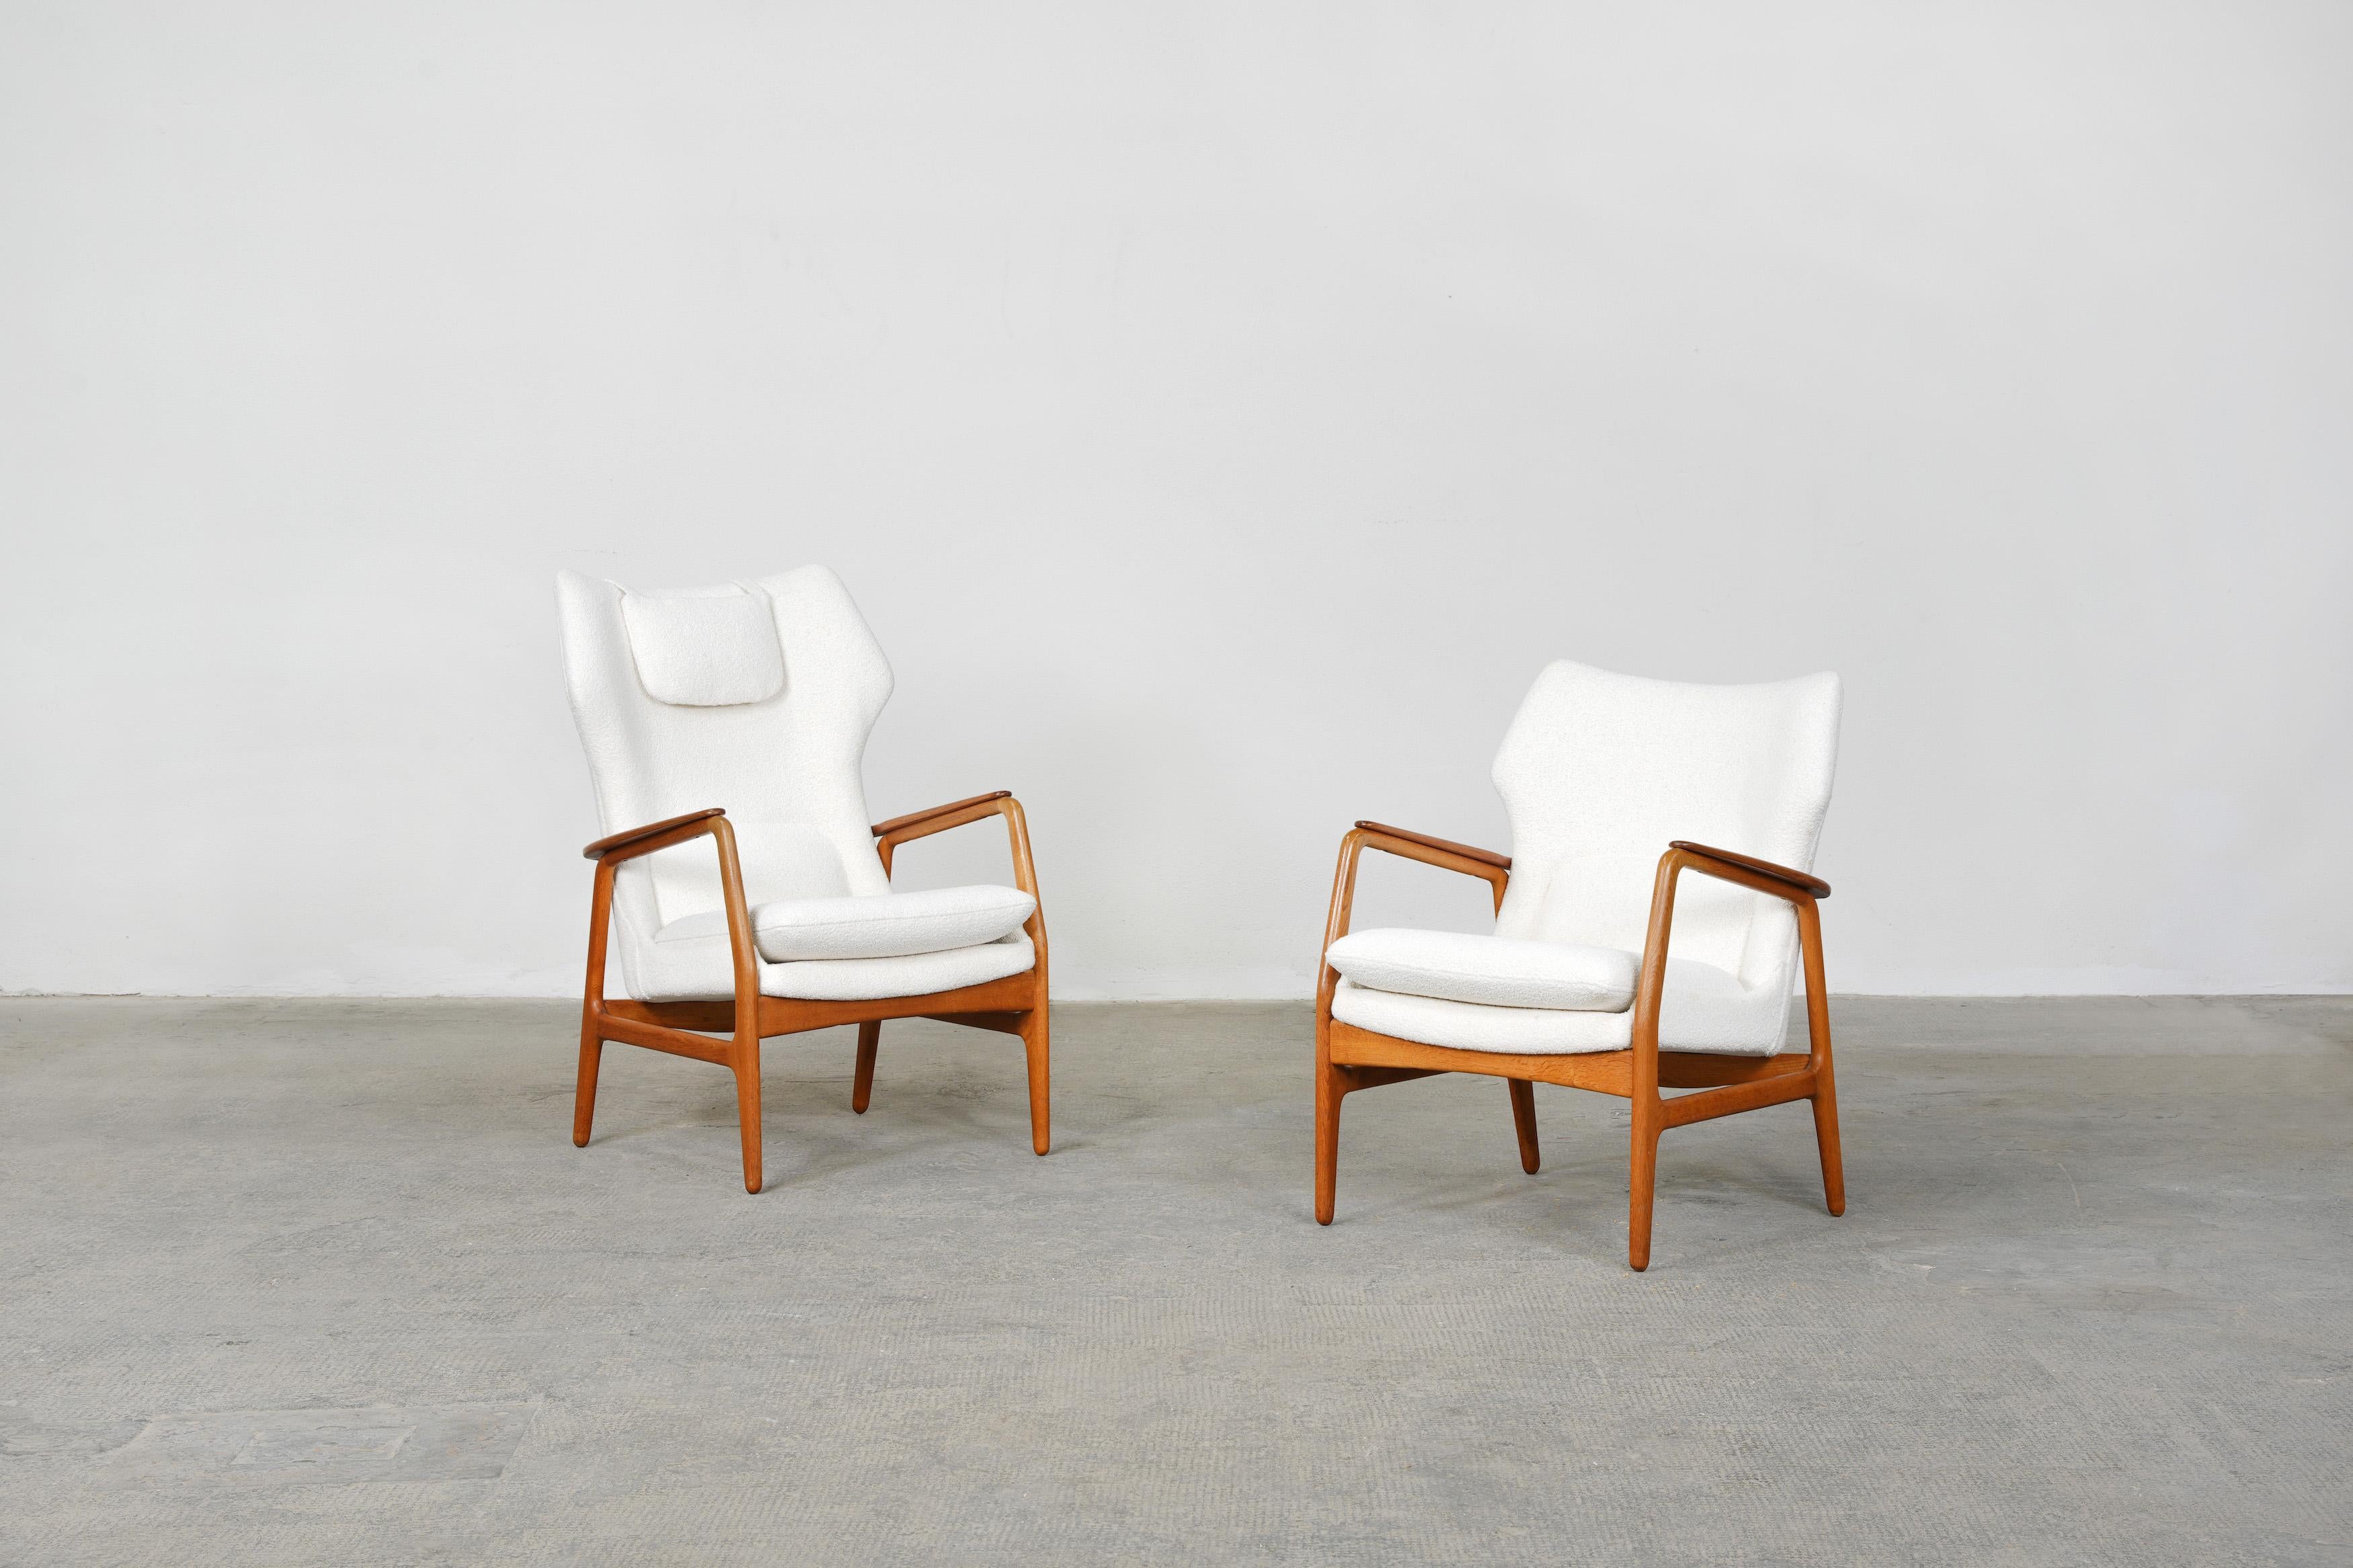 Magnifique paire de chaises longues conçues par les designers danois Ib Madsen & Acton Schubell pour Bovenkamp, 1954.

La paire est en excellent état. Ils ont été récemment retapissés avec un tissu bouclé blanc cassé de grande qualité.
Les deux